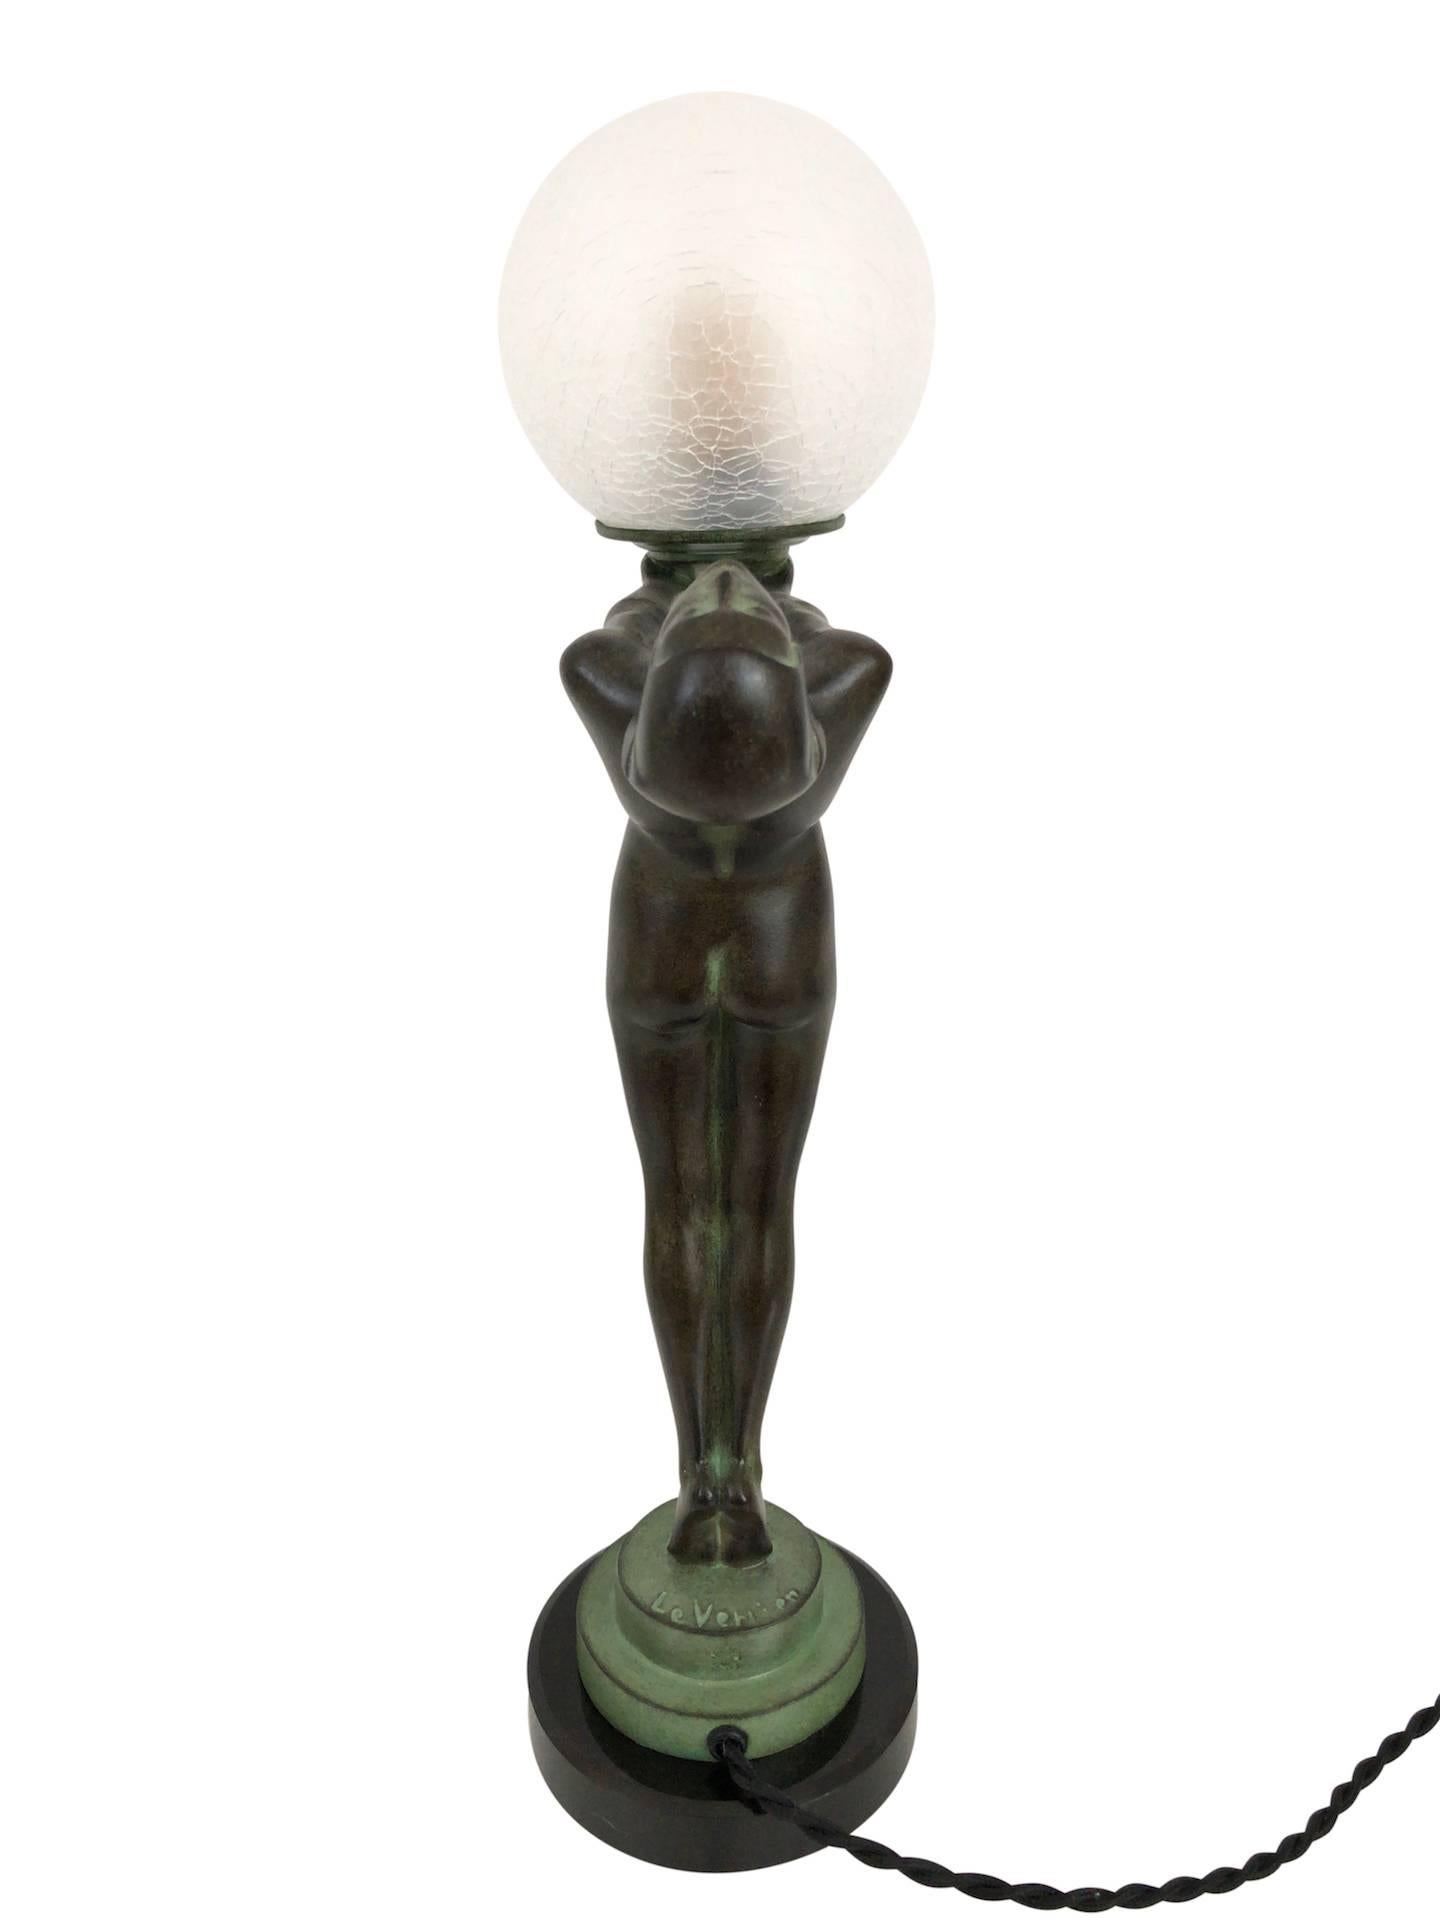 Clarté Sculpture Lueur Lamp from the Important Art Deco Artist Max Le Verrier  1